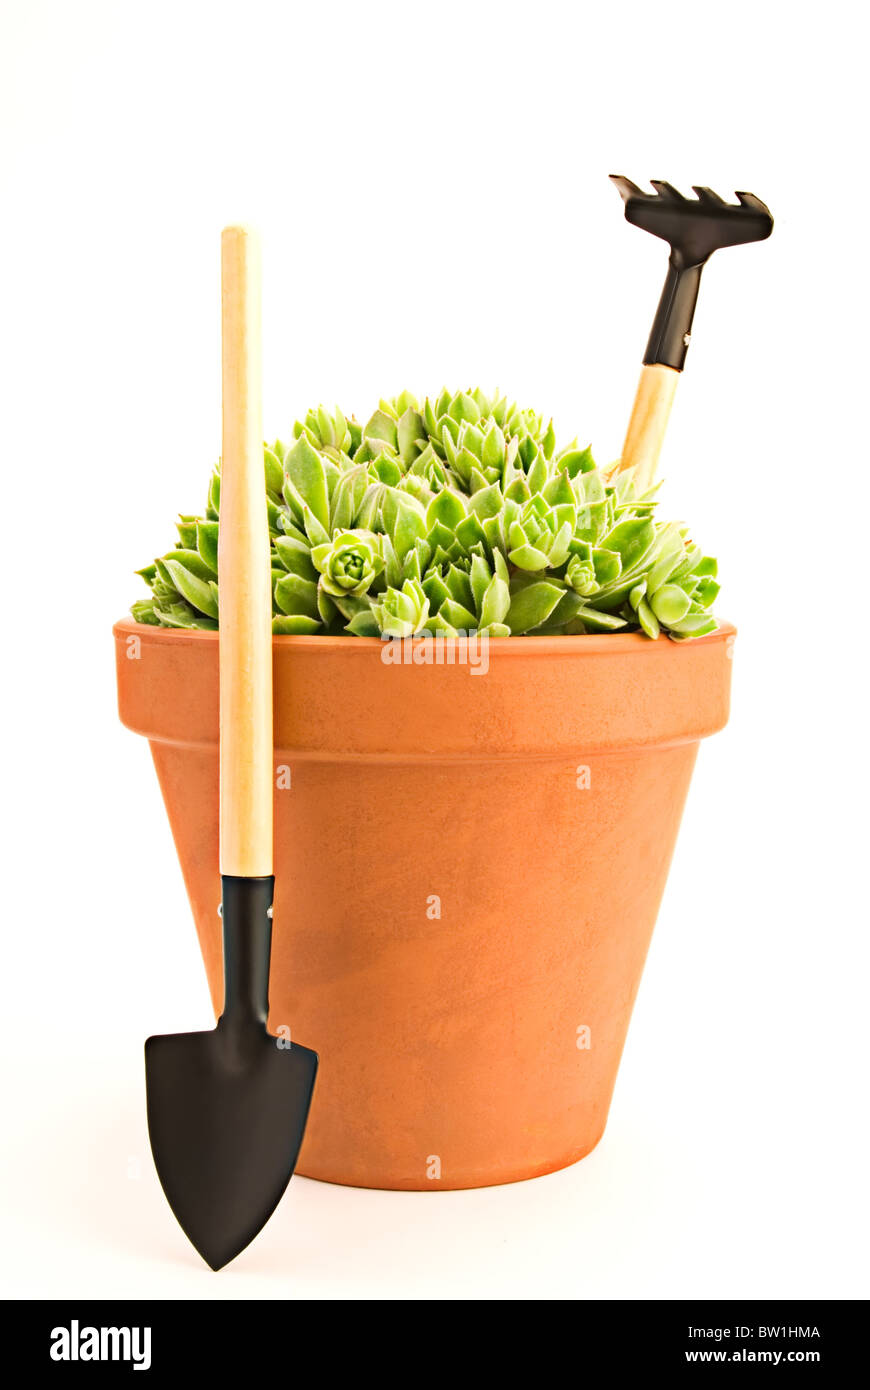 Beautiful green sempervivum in a pot and garden tools Stock Photo